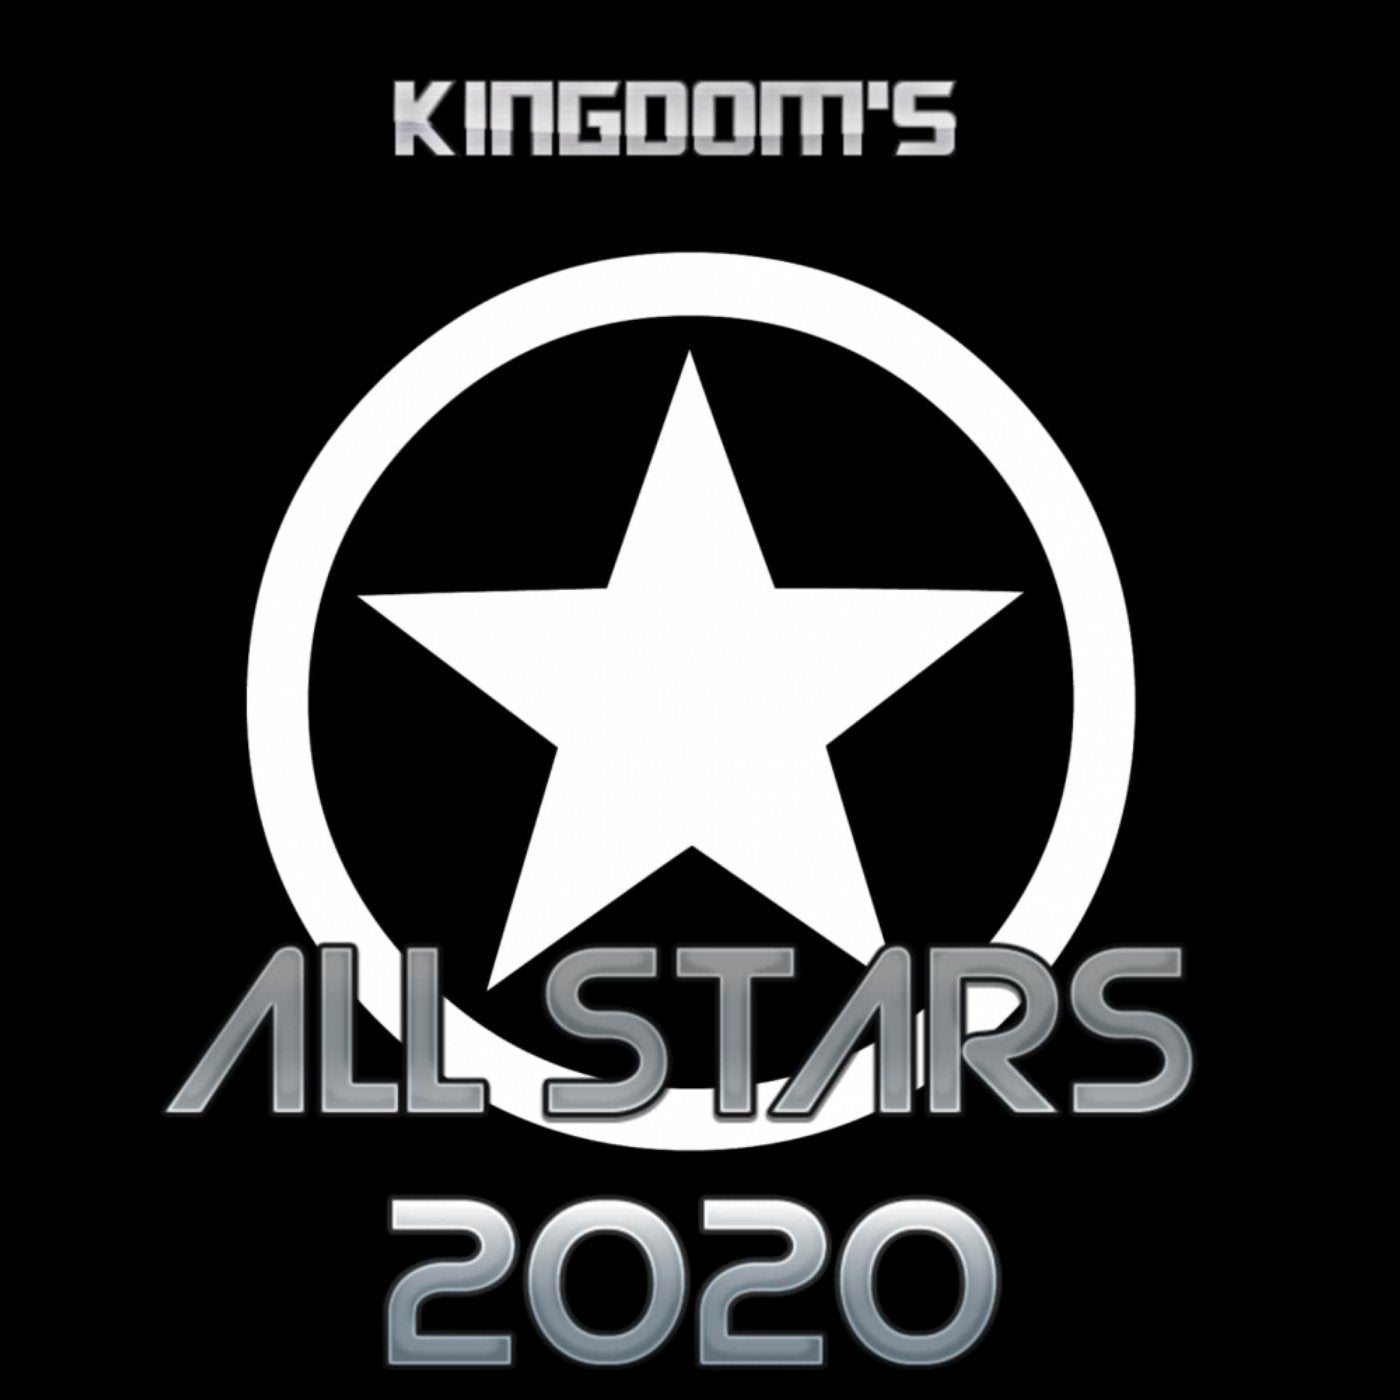 Kingdom's All Stars 2020